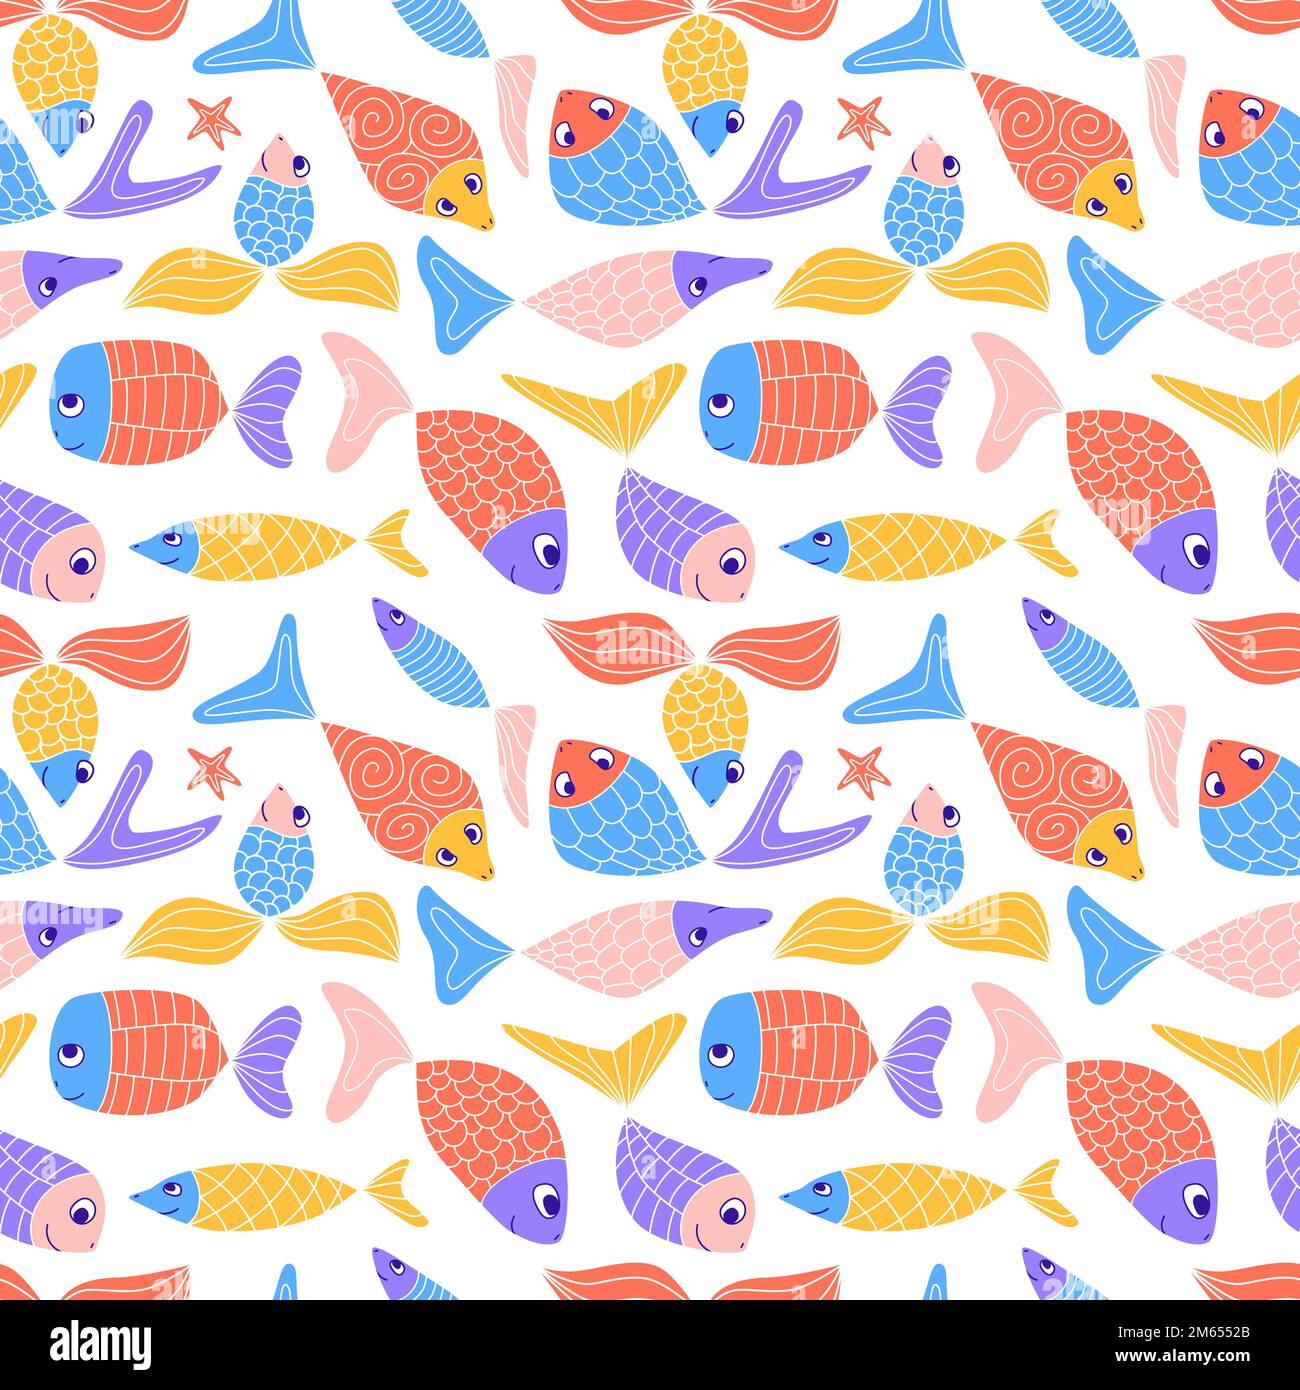 Joli motif coloré sans couture avec joli poisson en forme de doodle. Drôle enfants naïf résumé aquarium fond. Sardines à motifs de Zenangle, hareng, guppies, g Illustration de Vecteur